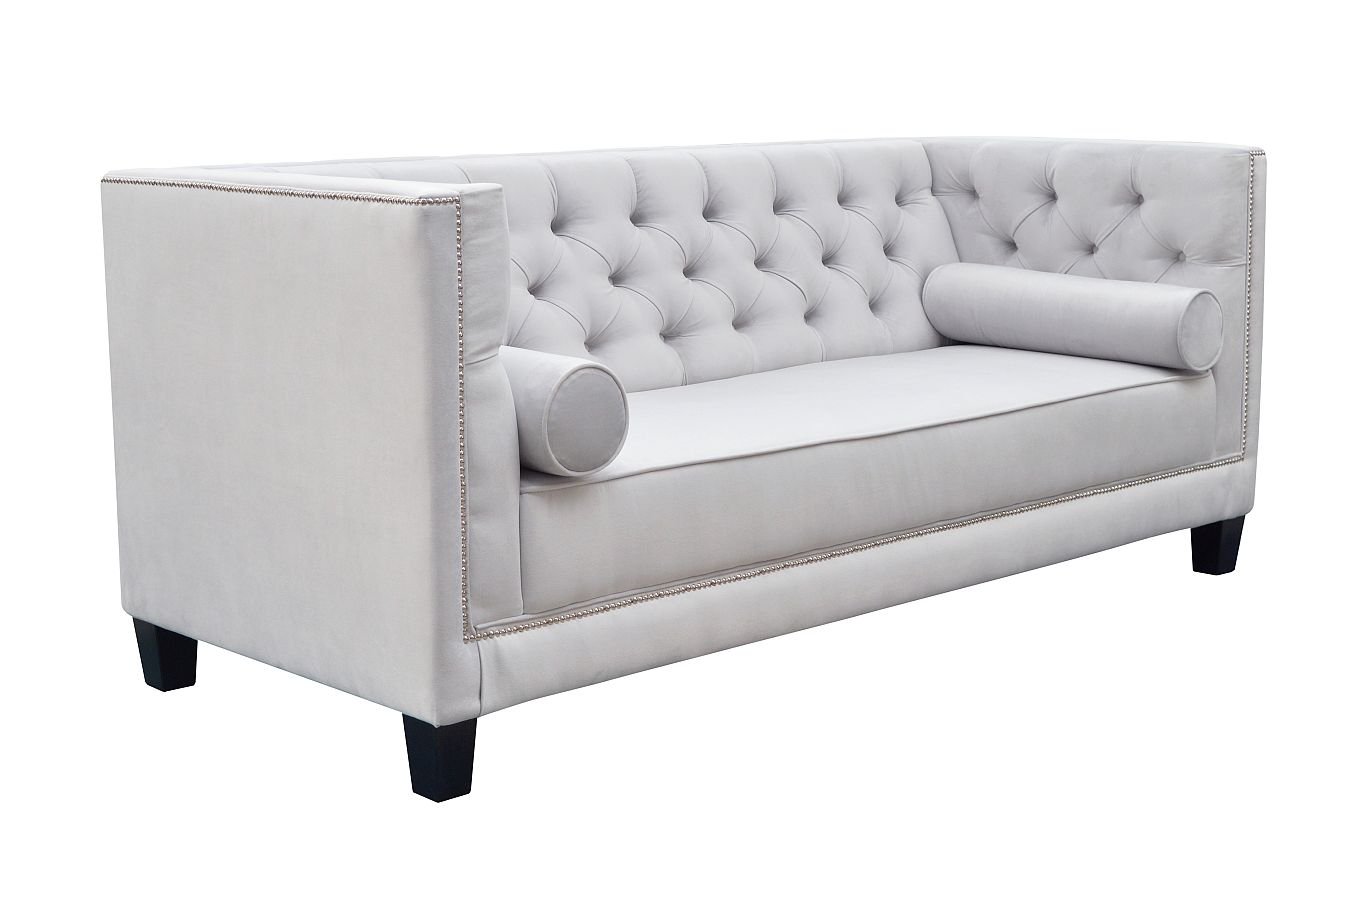 Nowoczesna sofa WENECJA pikowana w stylu Chesterfield / szerokość 225 cm